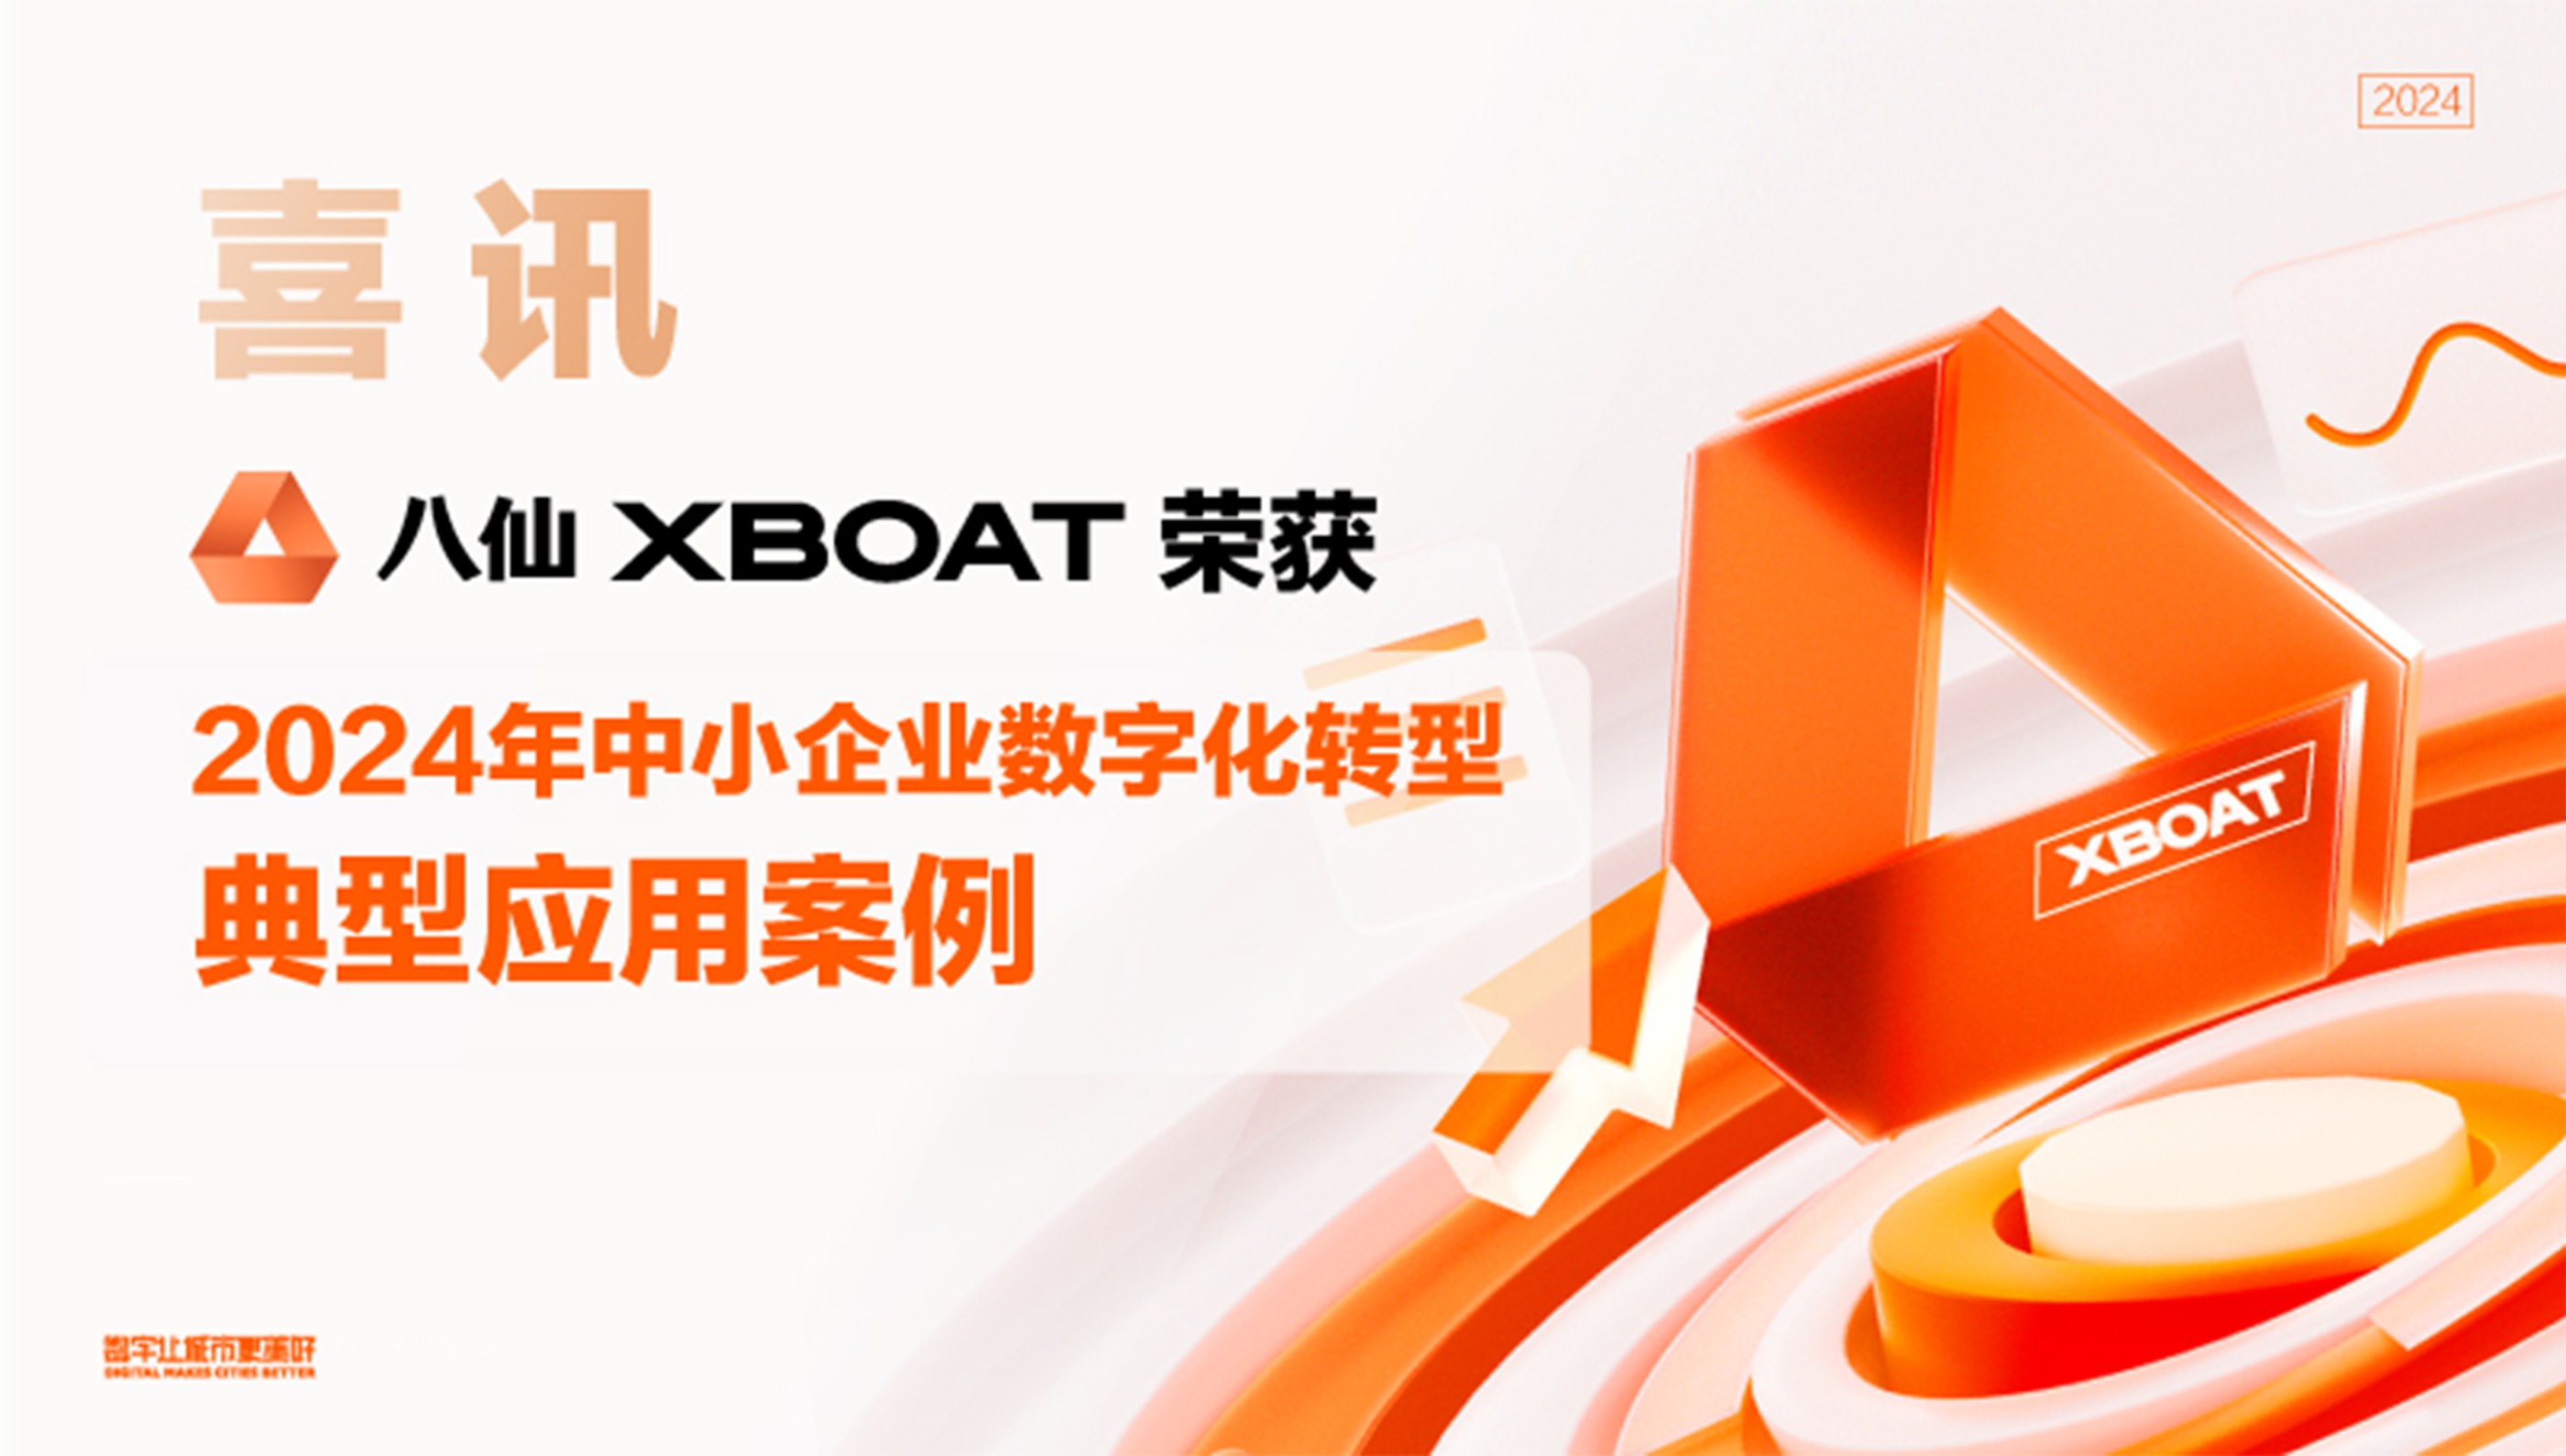 八仙XBOAT平台荣获2024年中小企业数字化转型典型应用案例